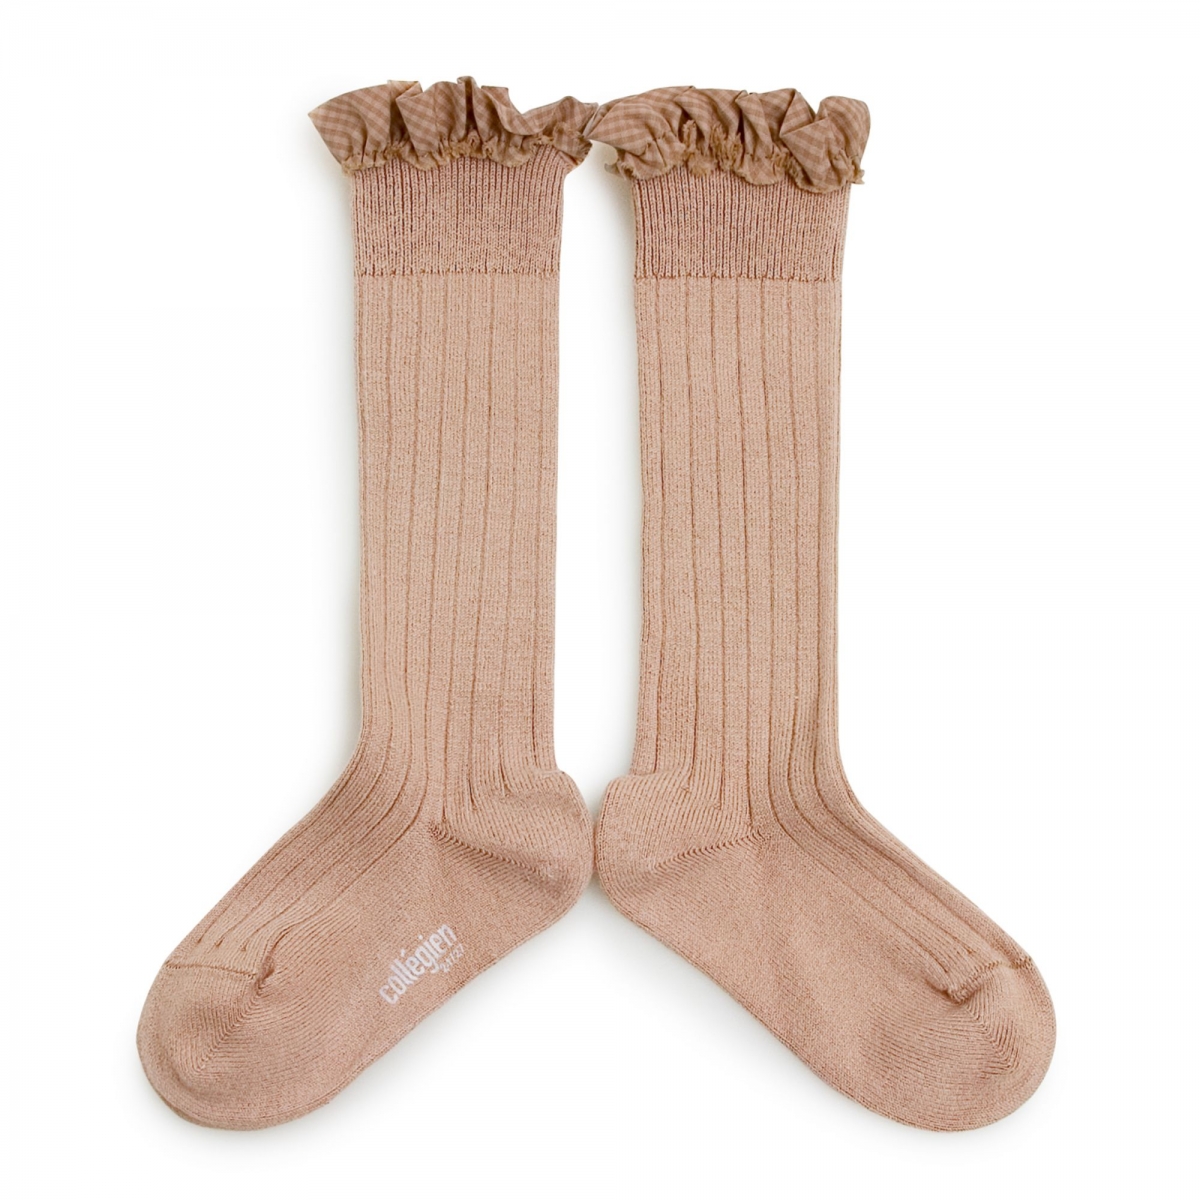 Collégien - Knee high socks Apolline vieux rose - Collants et chaussettes - 2961 331 Apolline 